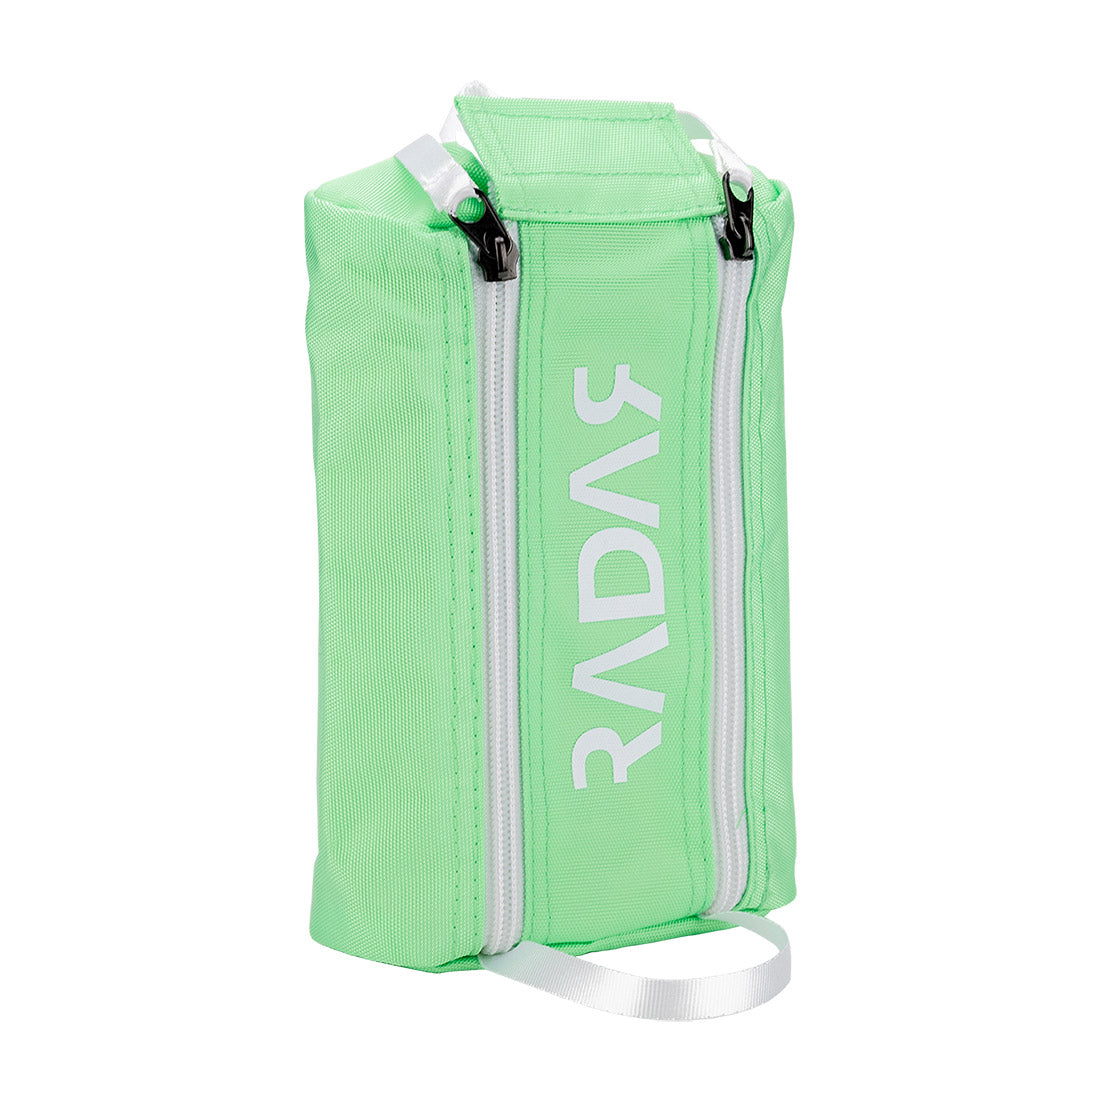 Radar Mini Wheel Bag w/ Window Green Bags and Backpacks